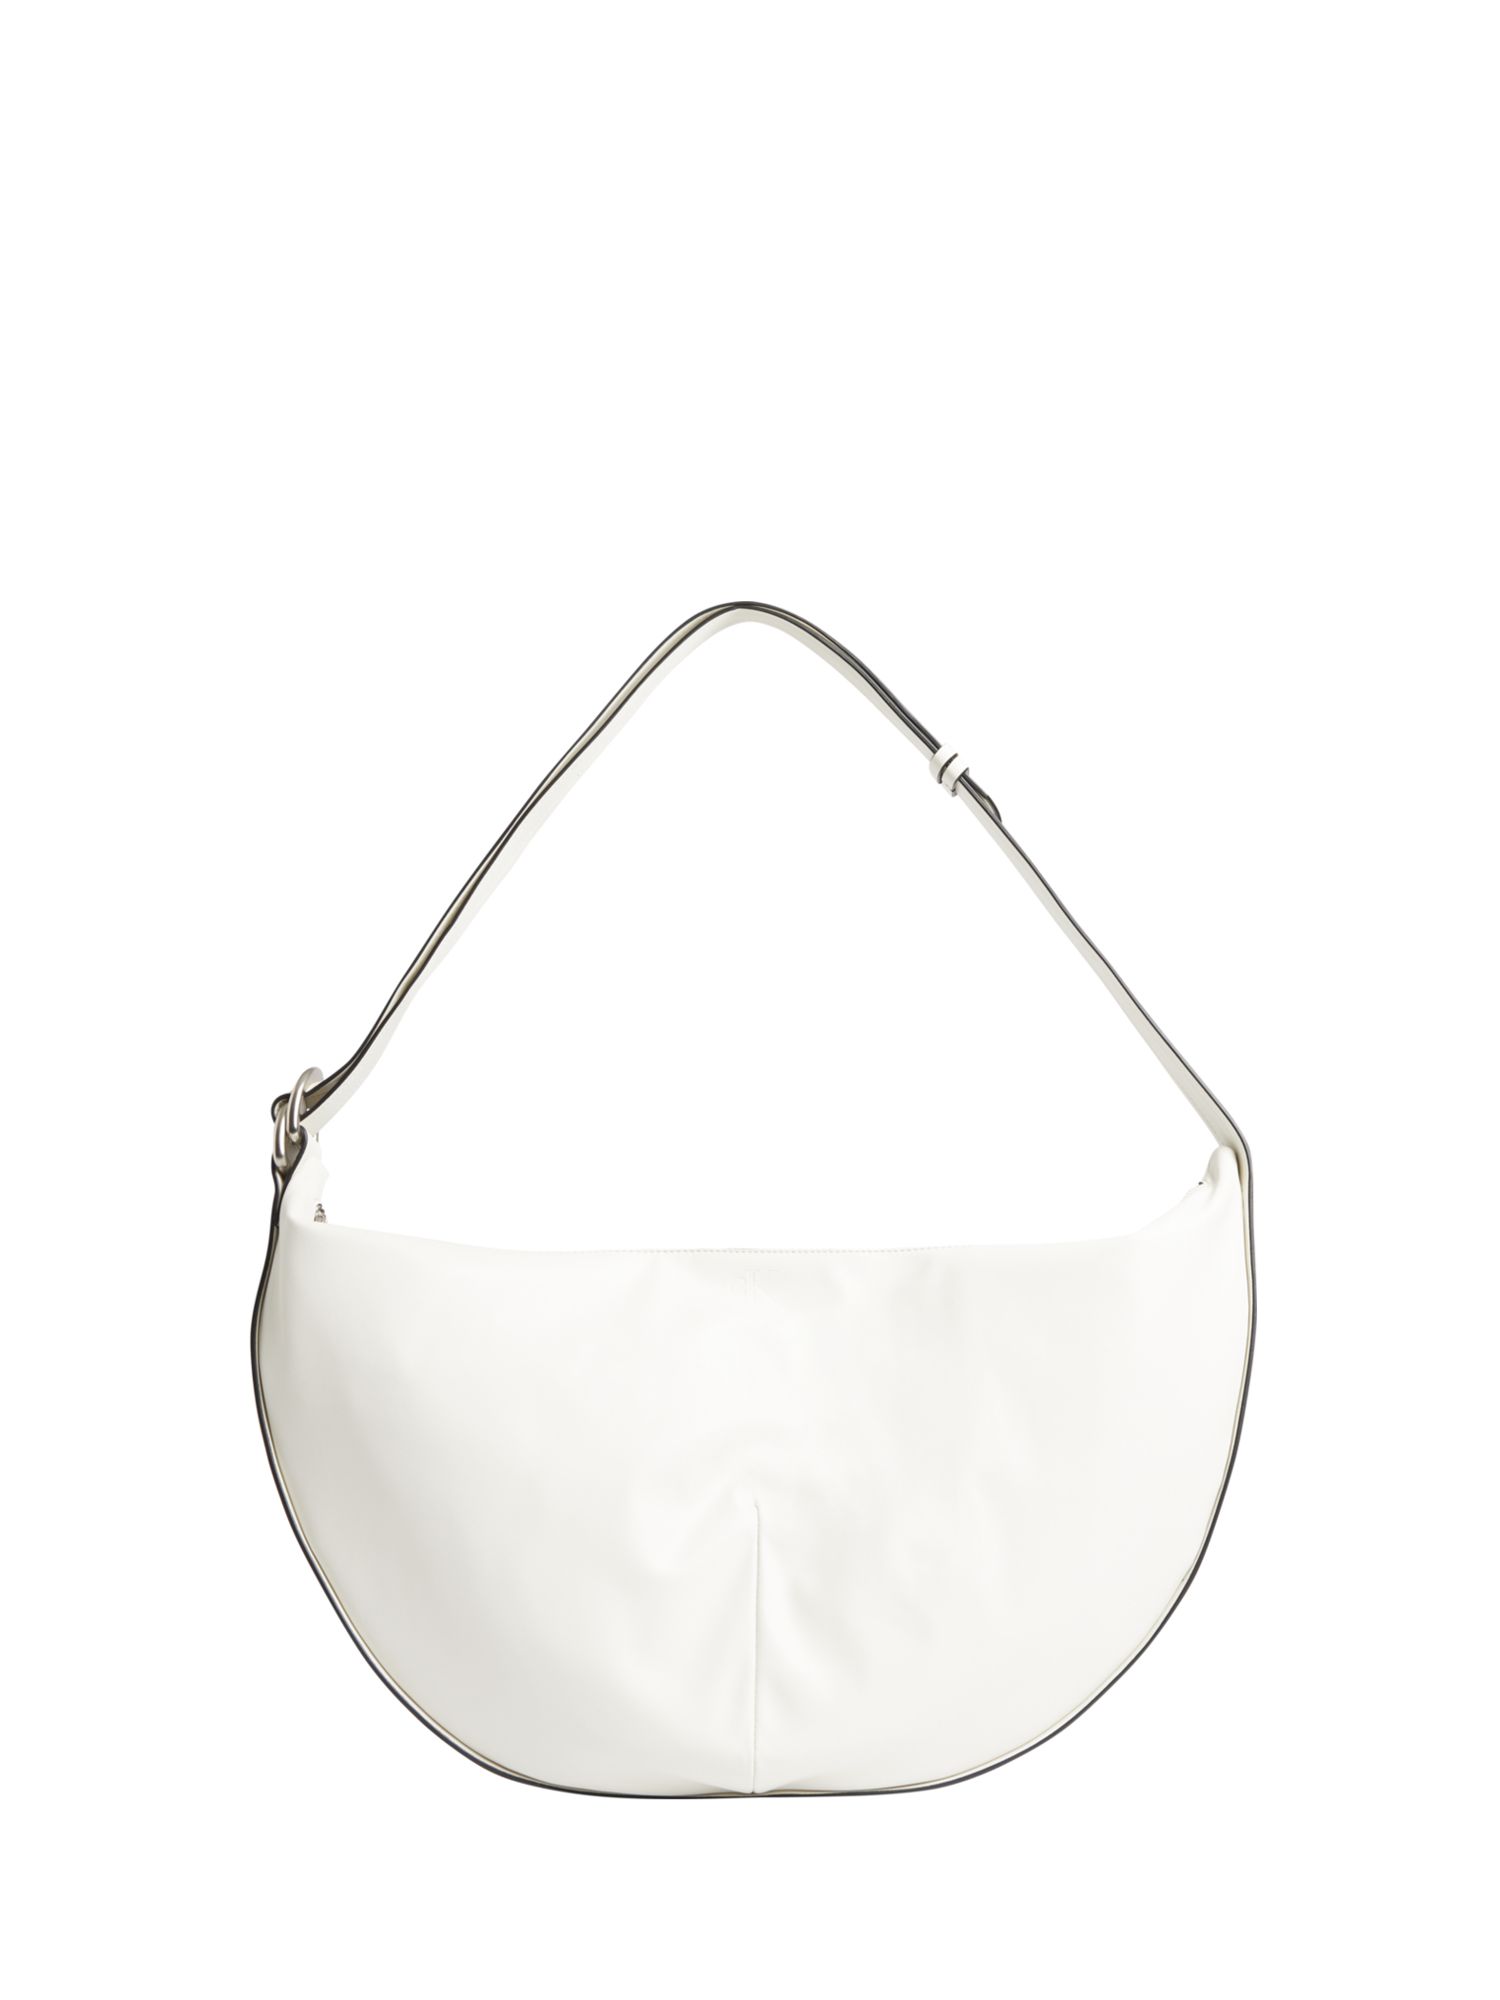 Calvin Klein Large Crescent Bag, Ivory